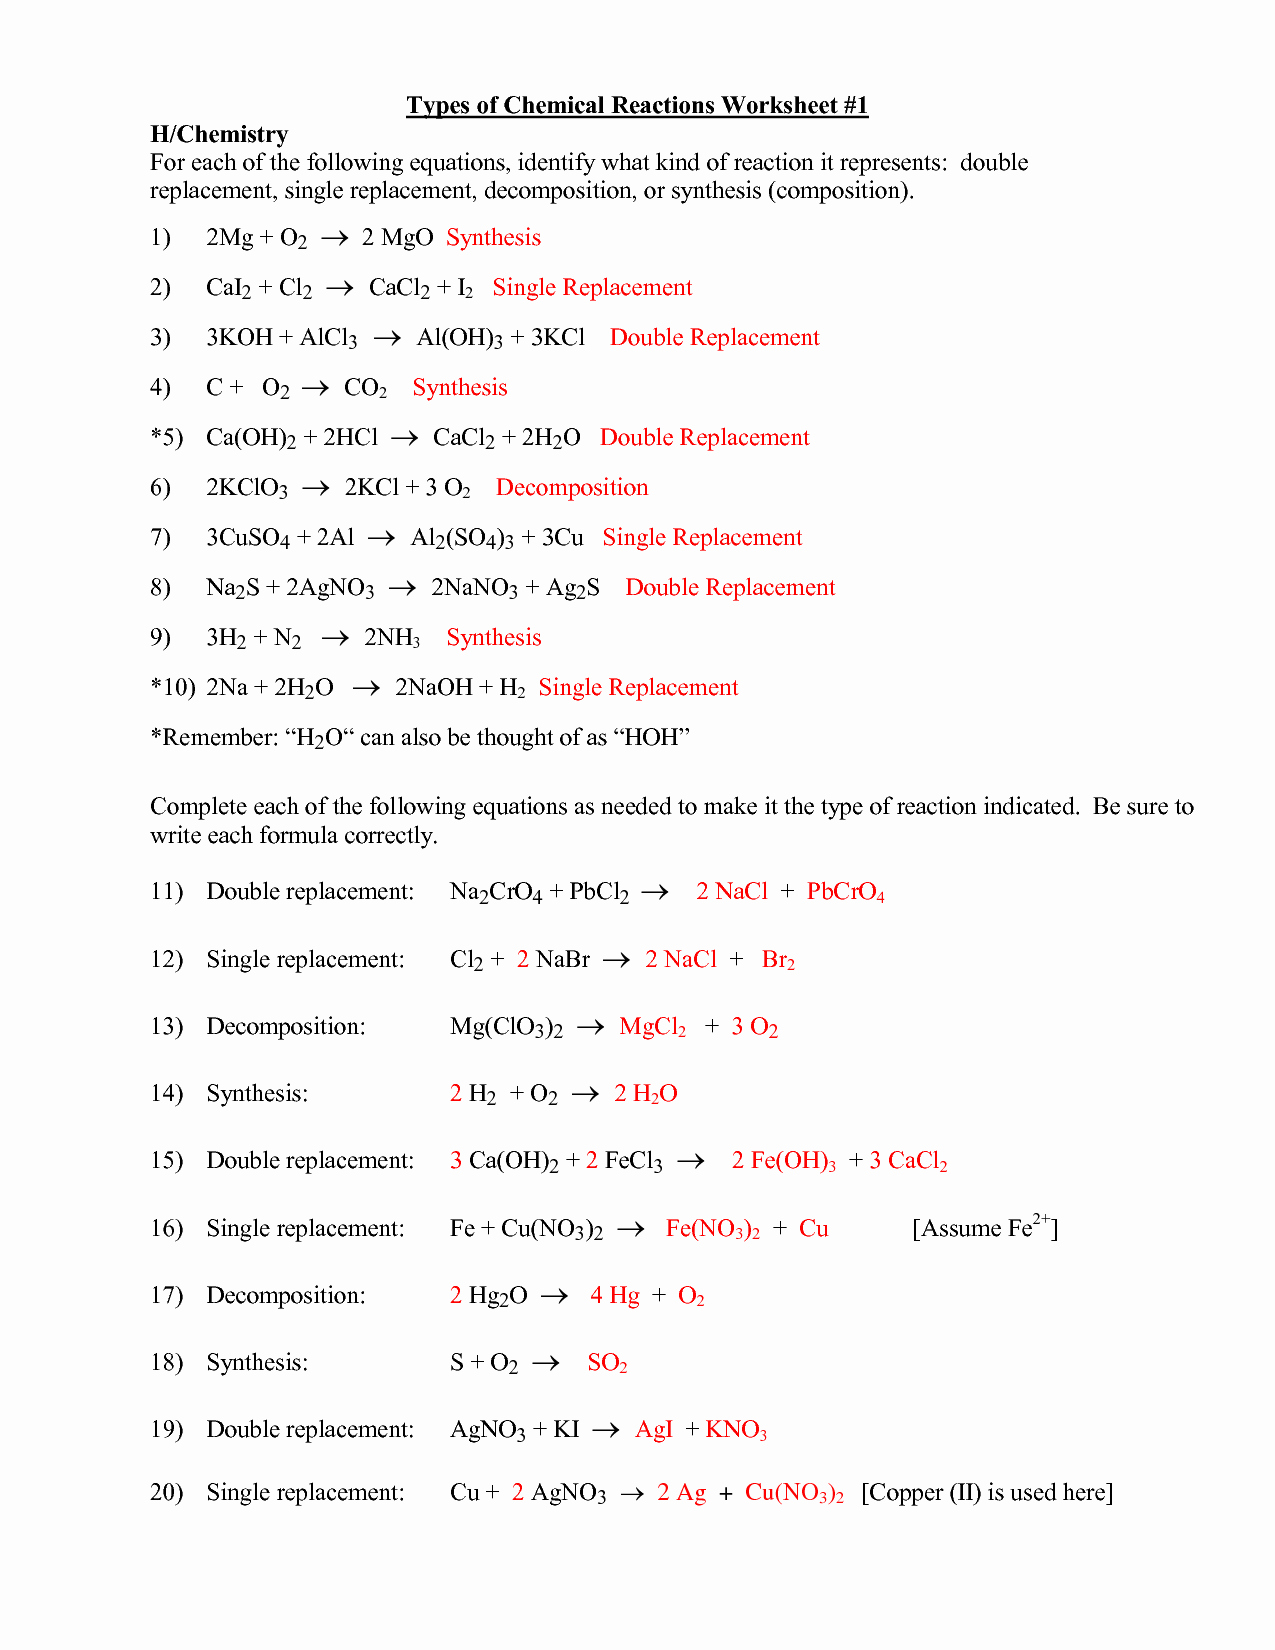 Types Of Reactions Worksheet Luxury 16 Best Of Types Chemical Reactions Worksheets